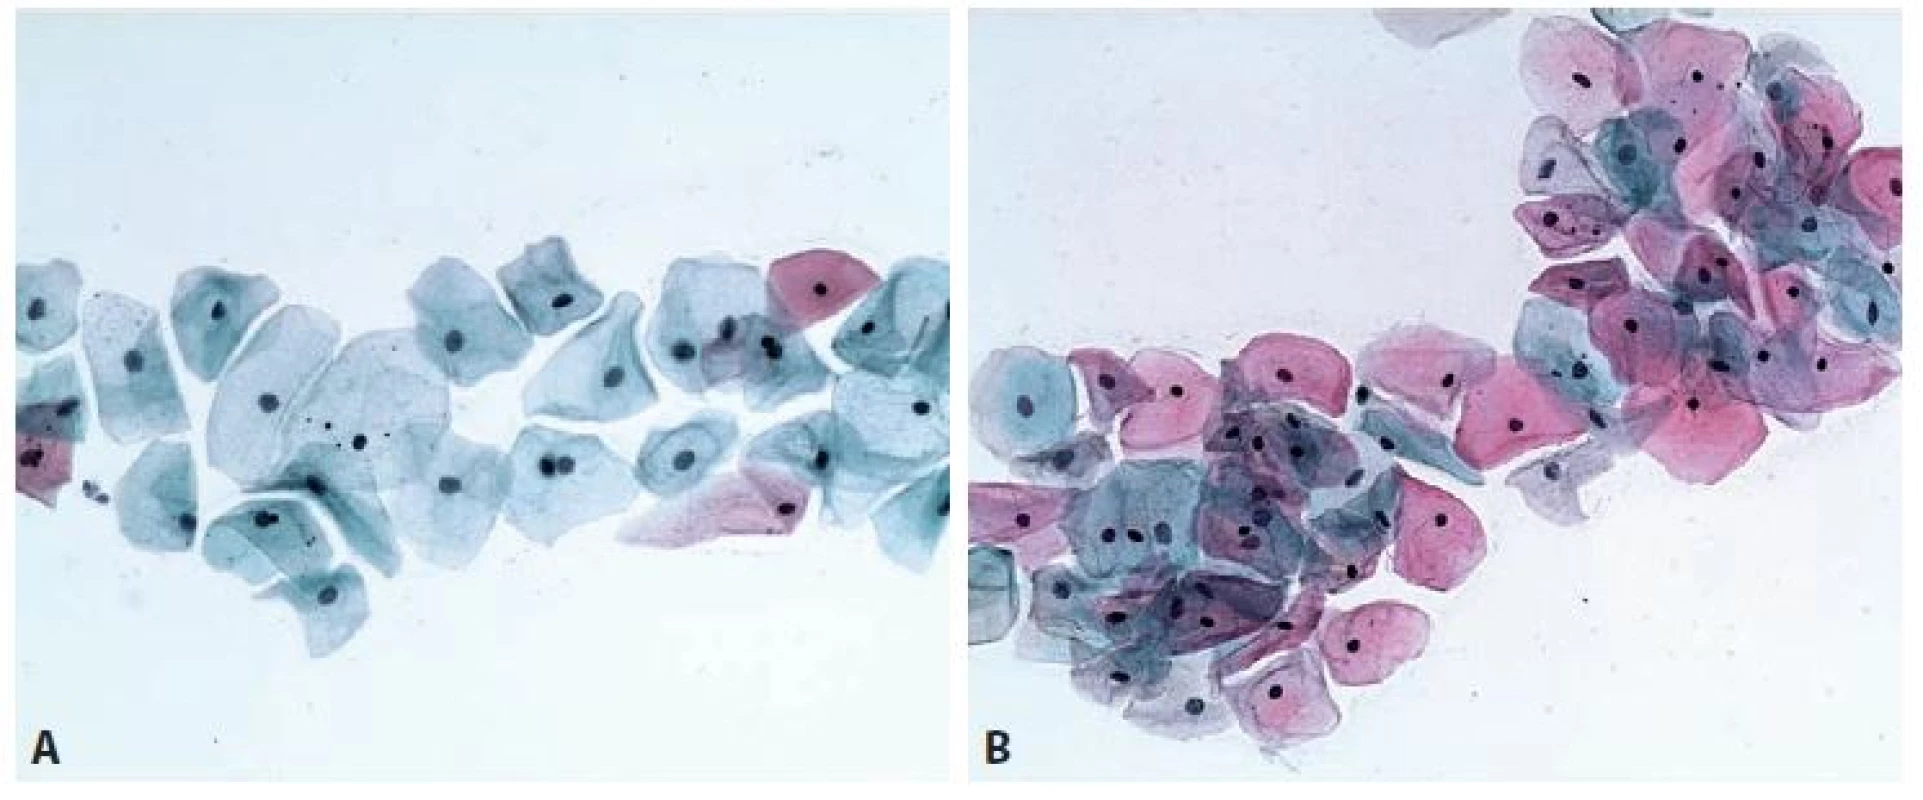 Cytogram generačního období – proliferační fáze. Intermediární buňky s většími jádry a převážně s cyanofi lní cytoplazmou a superfi -
ciální buňky s malými pyknotickými jádry a převážně eozinofi lní cytoplazmou. A: 9. den cyklu, převaha intermediárních cyanofi lních buněk.
B: 14. den cyklu – ovulační obraz. Převaha eozinofi lních superfi ciálních buněk – obraz vrcholné estrogenní stimulace epitelu. Papanicolaou, 200x.